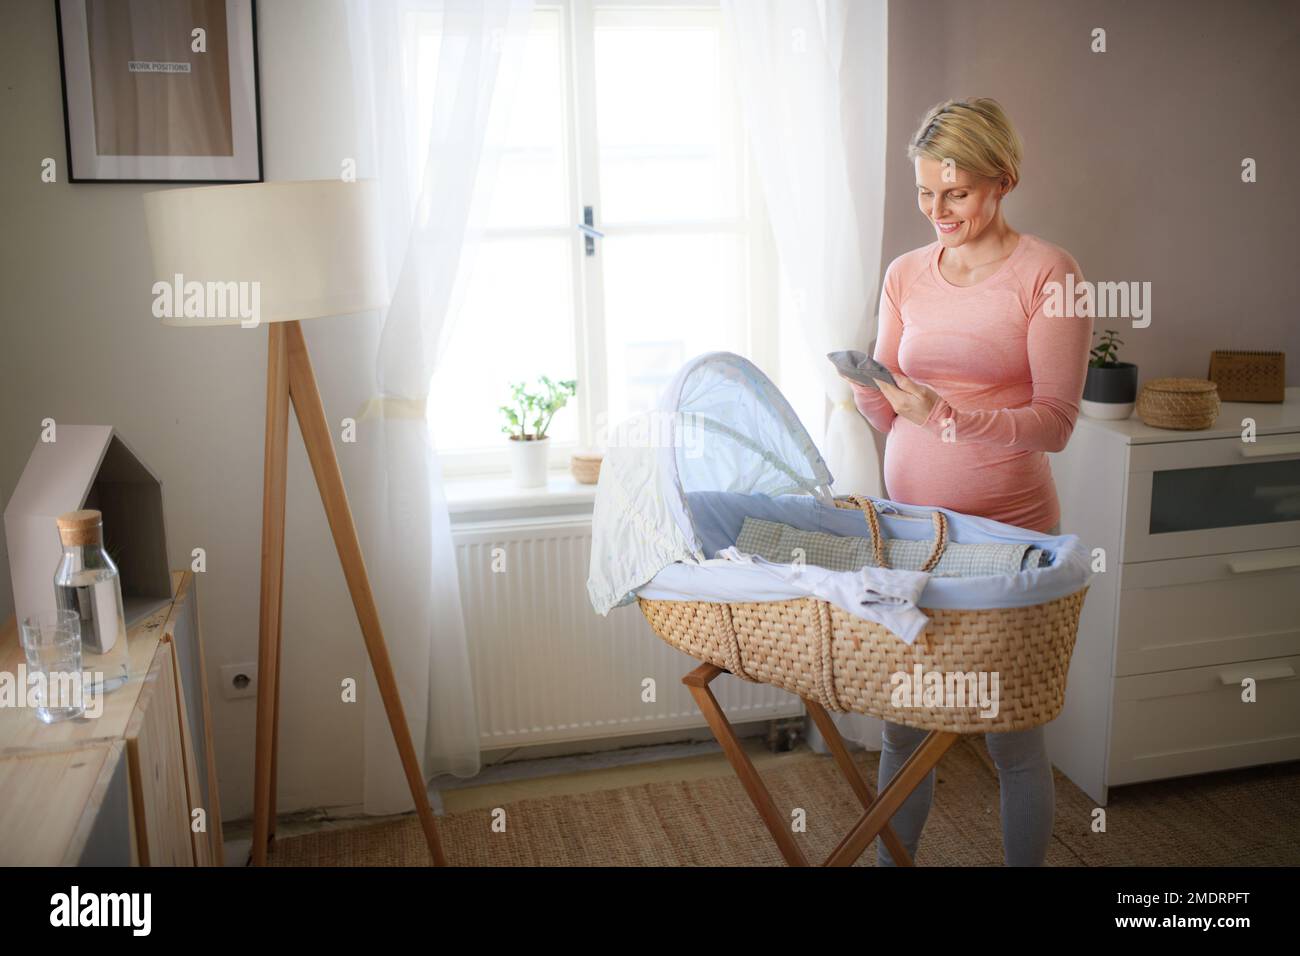 Bonne femme enceinte regardant de petits vêtements pour son bébé. Banque D'Images